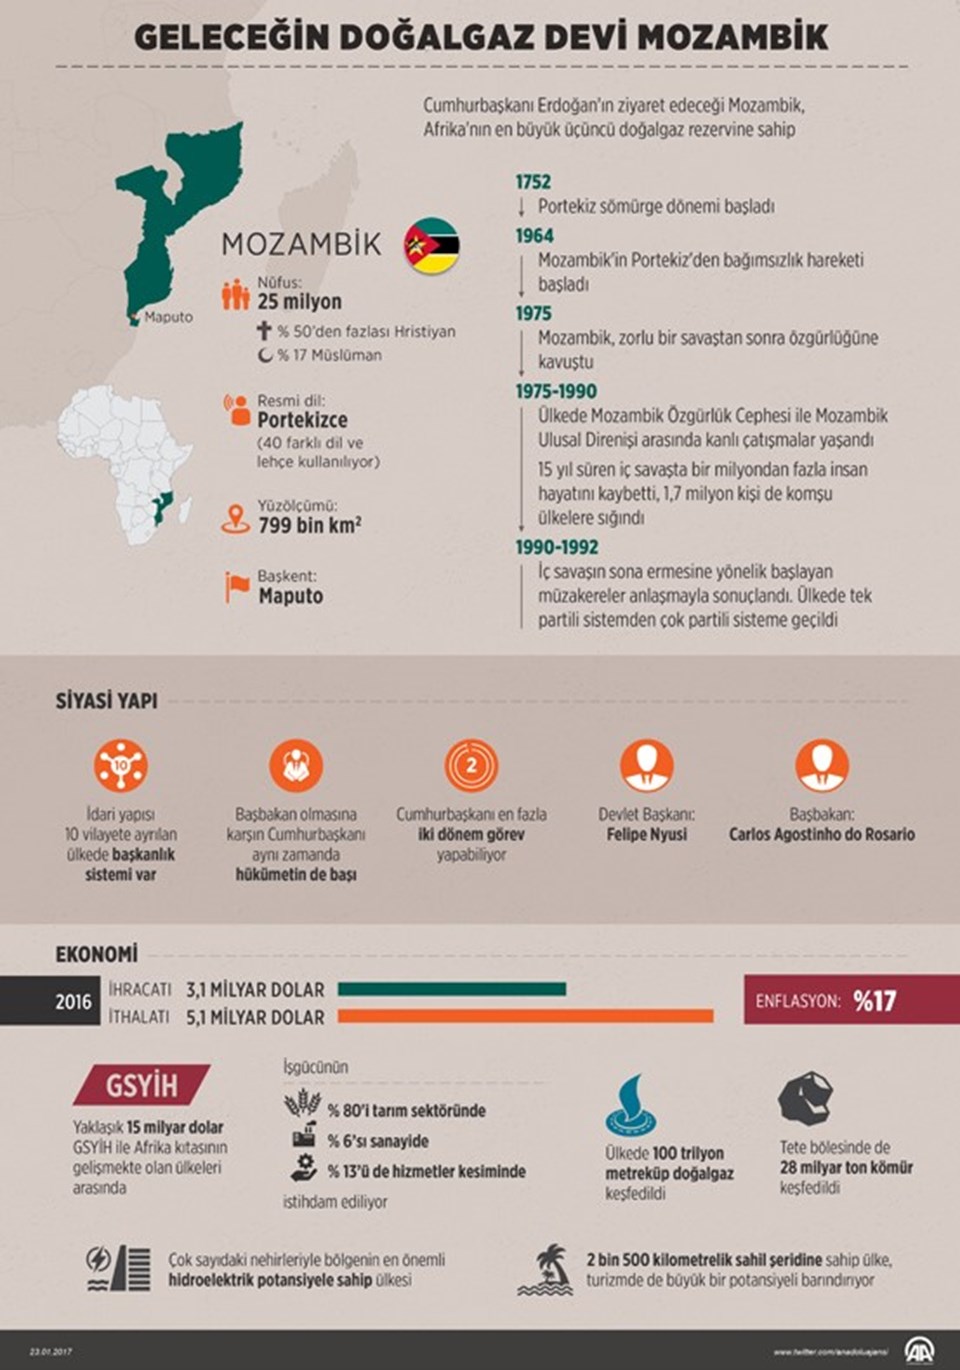 Geleceğin doğalgaz devi: Mozambik - 1